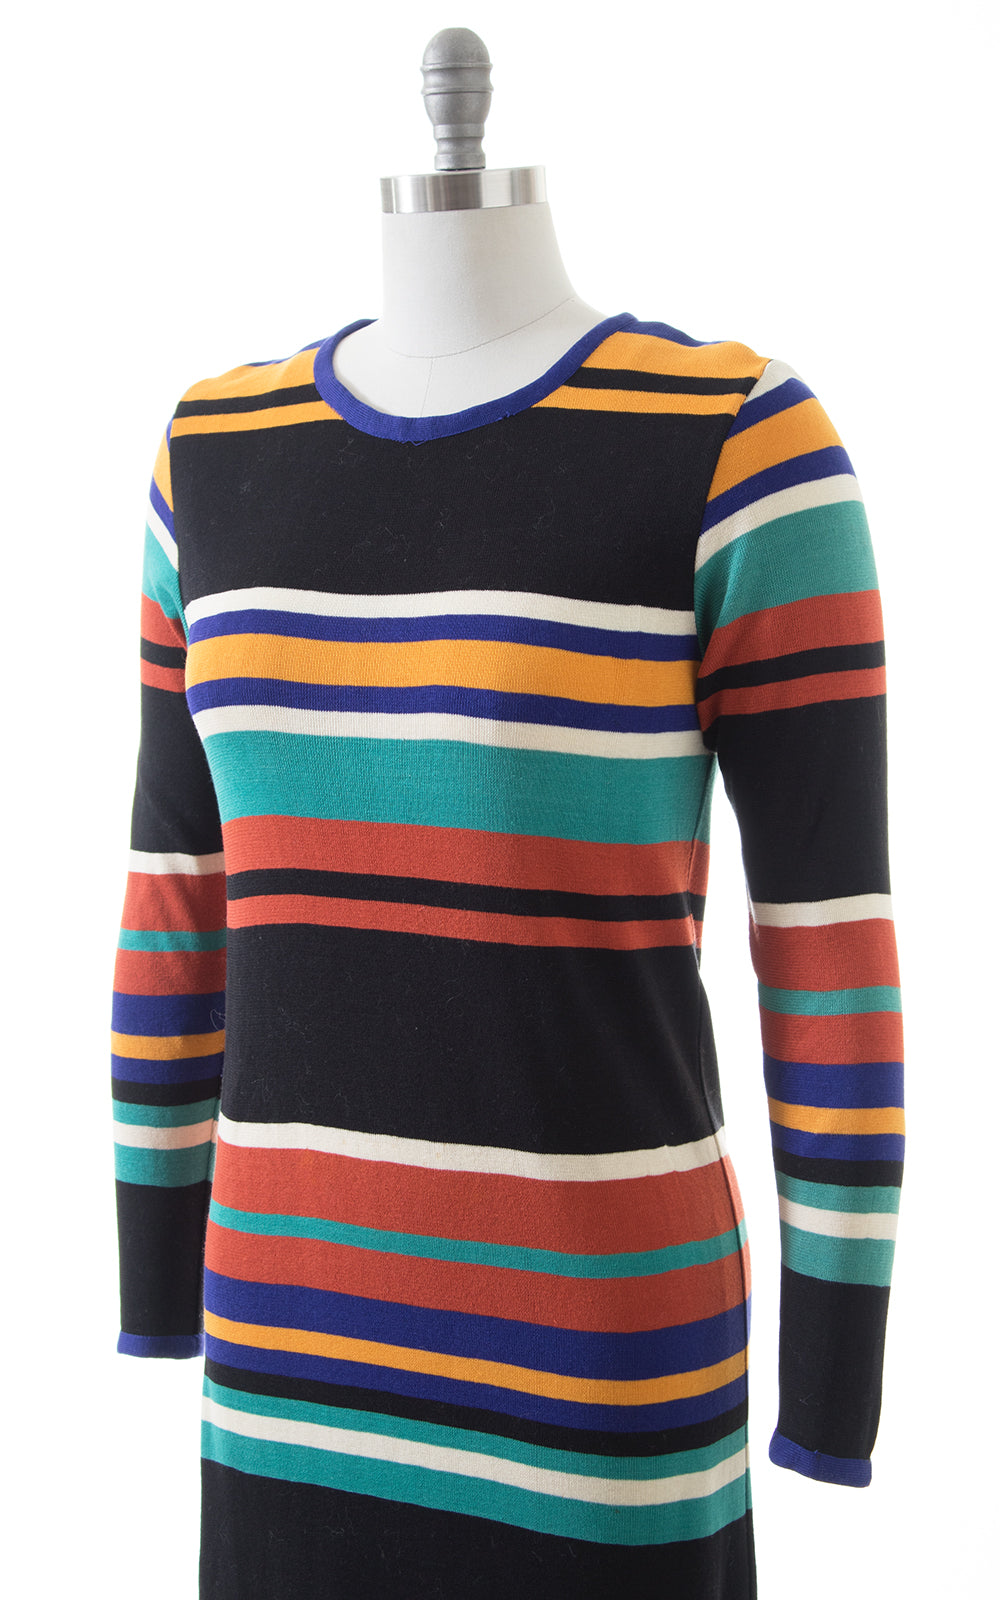 1960s 1970s Missoni Striped Knit Wool Sweater Dress